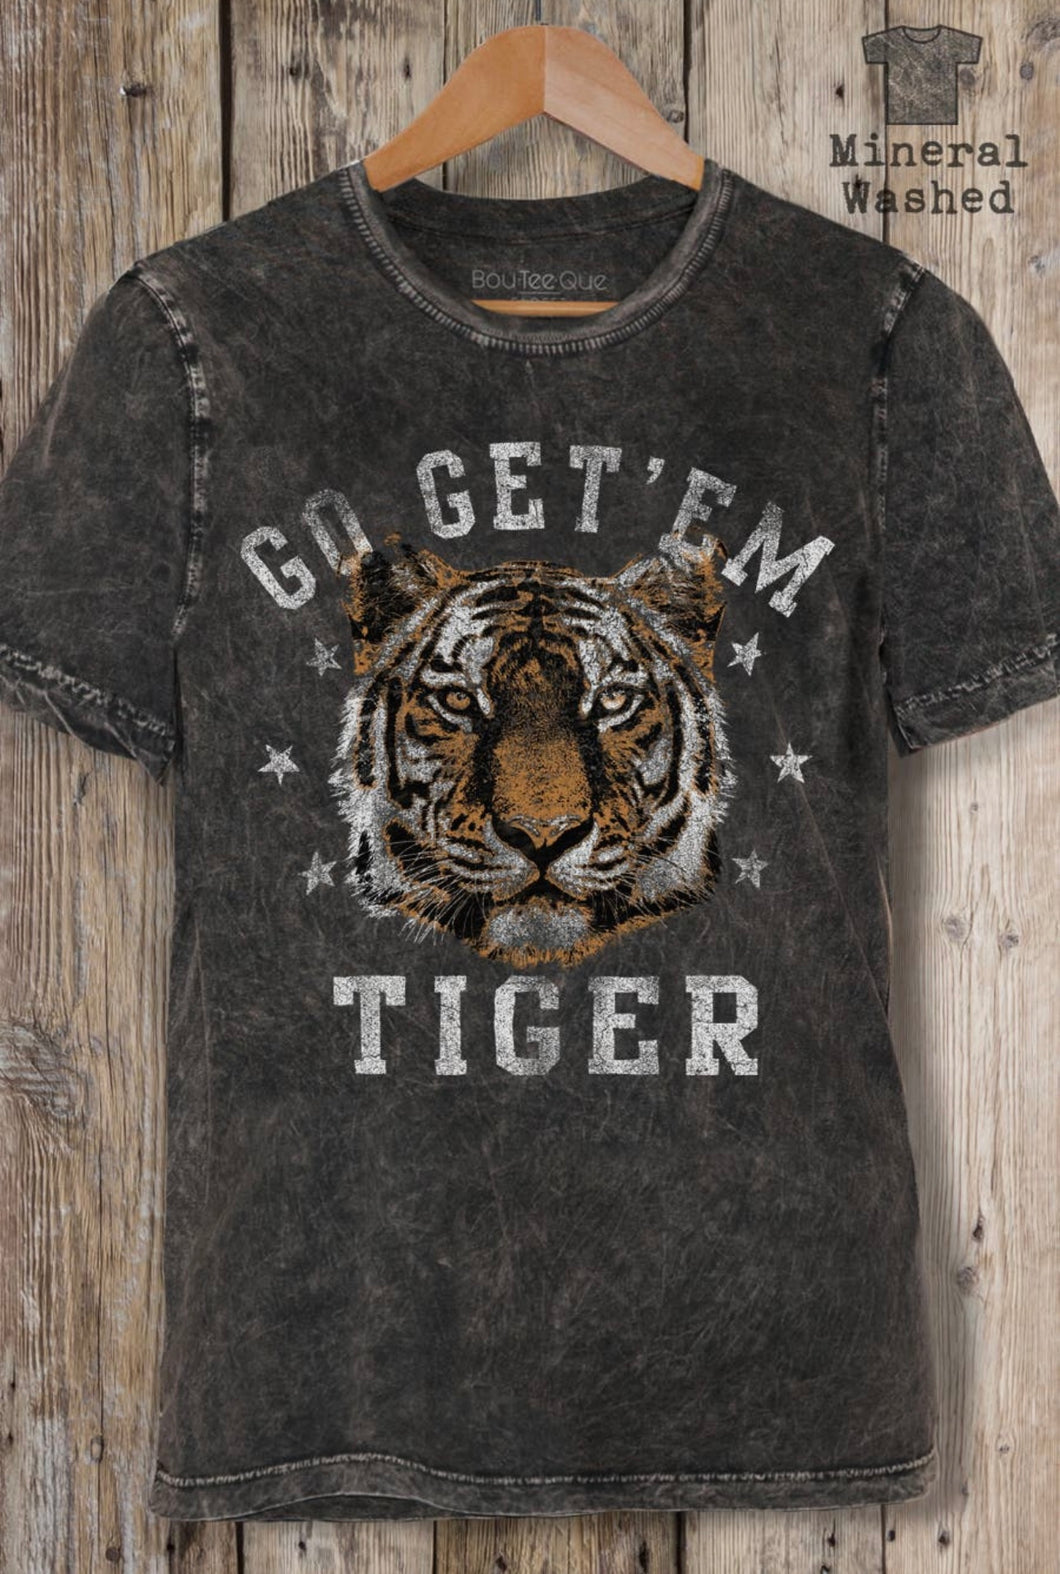 Go Get ‘Em Tigers